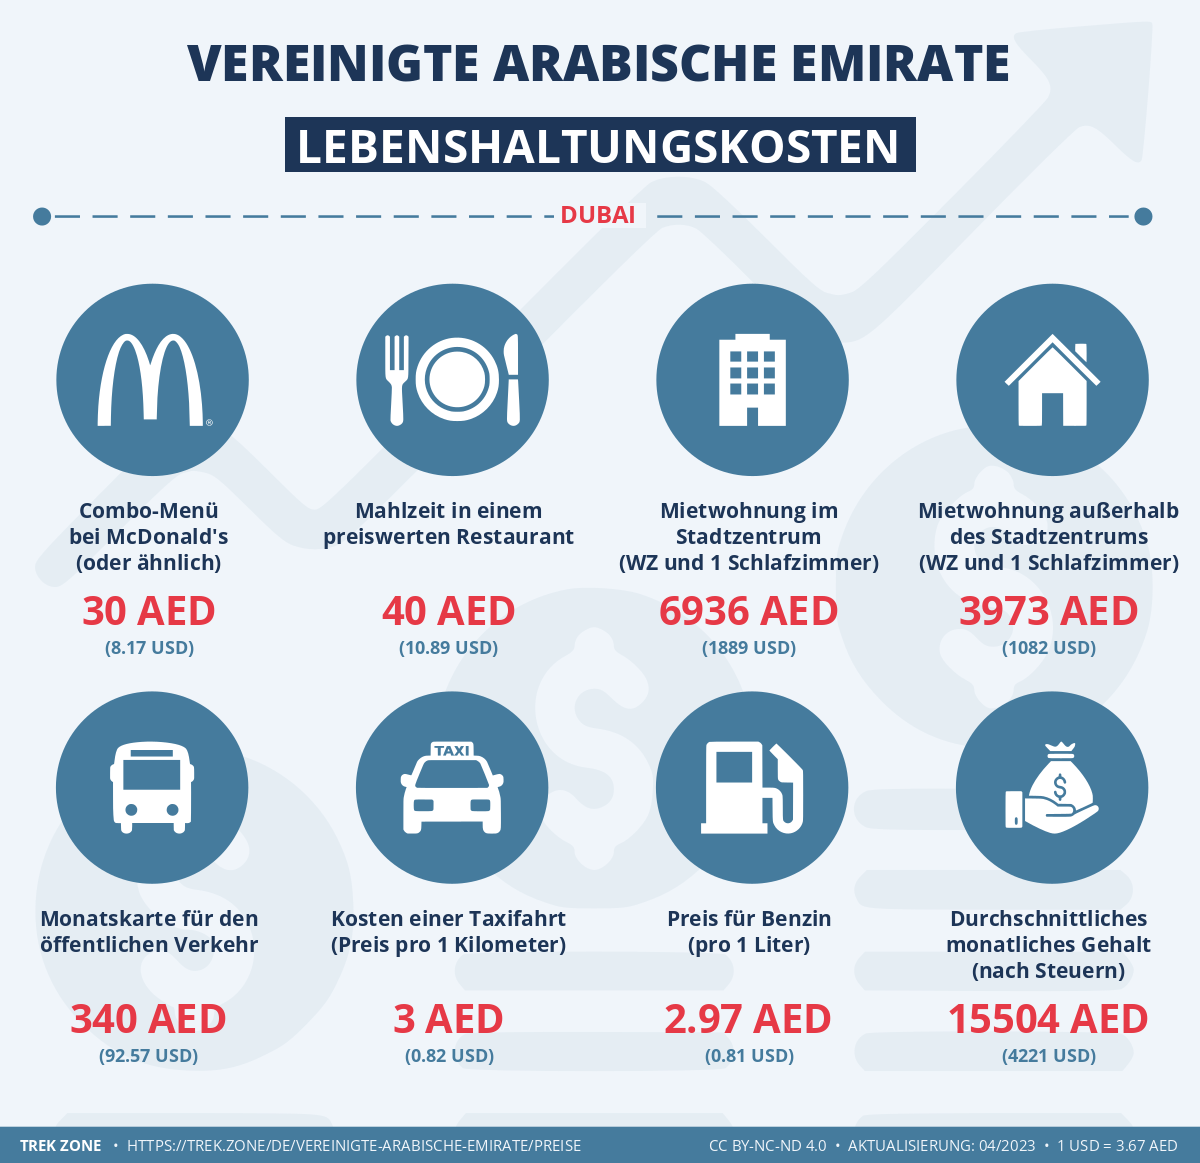 preise und lebenskosten vereinigte arabische emirate